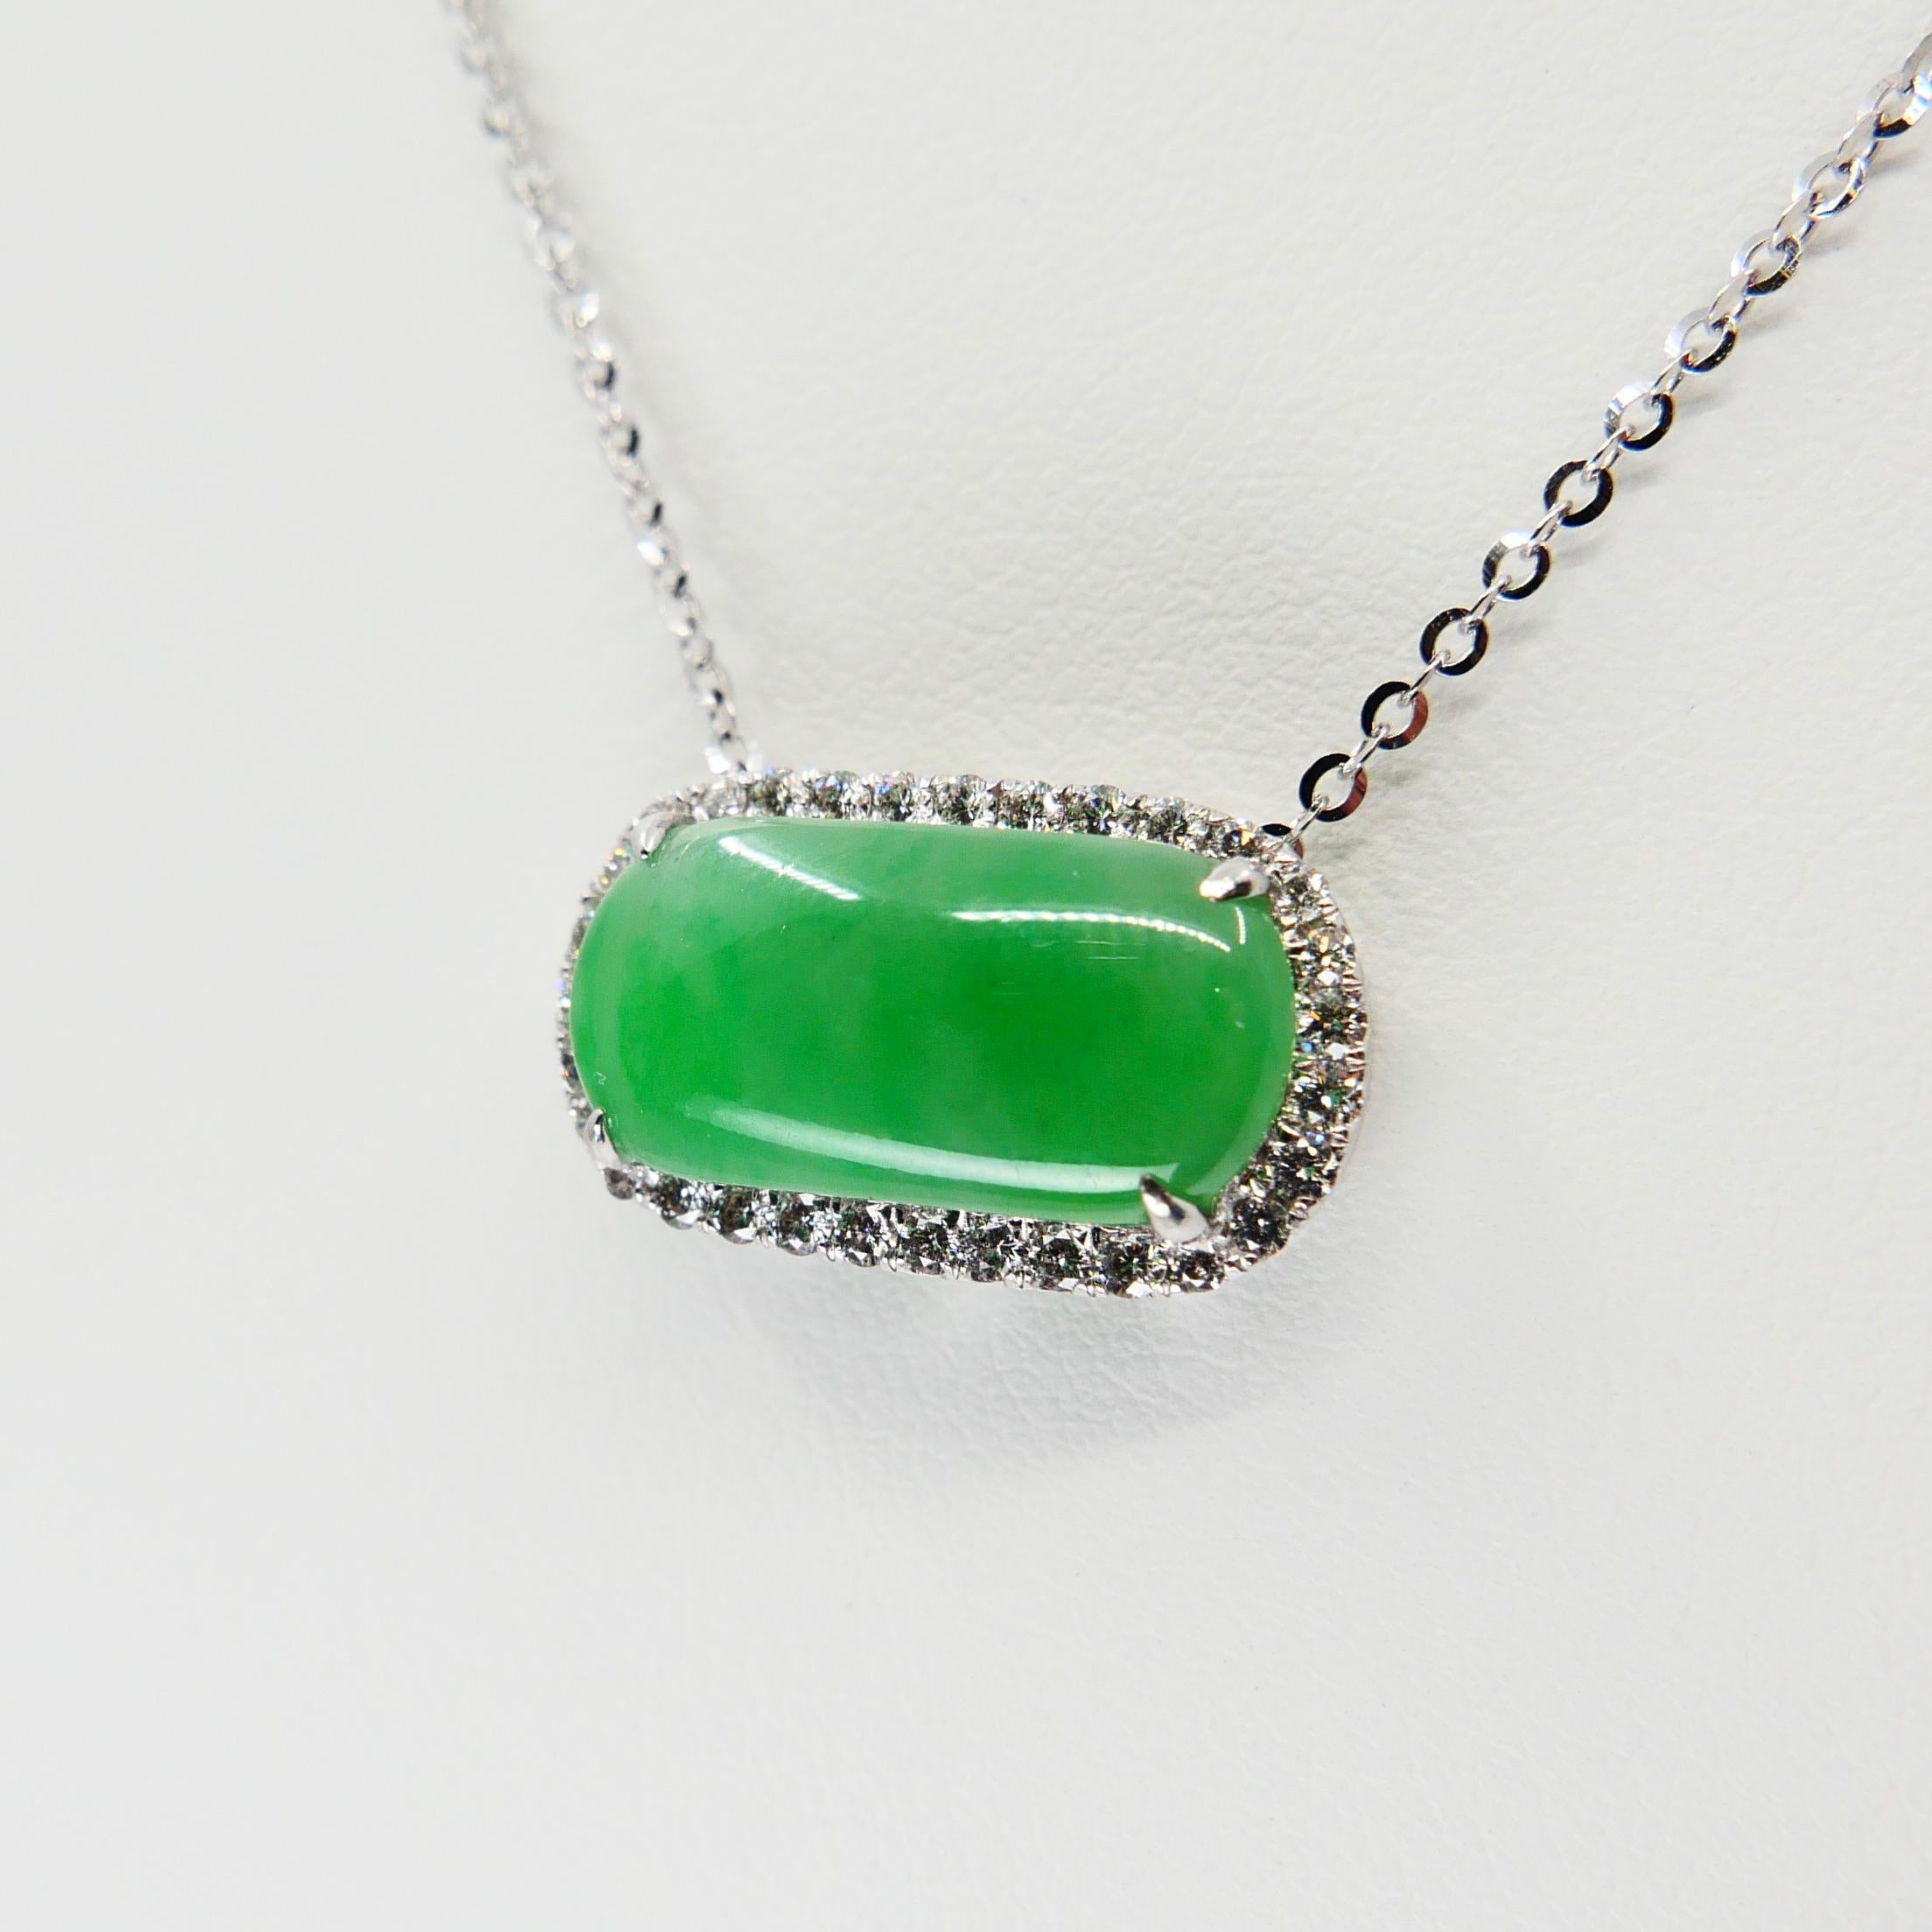 Certified Type A Jadeite Jade Diamond Pendant Drop Necklace, Apple Green Color For Sale 5